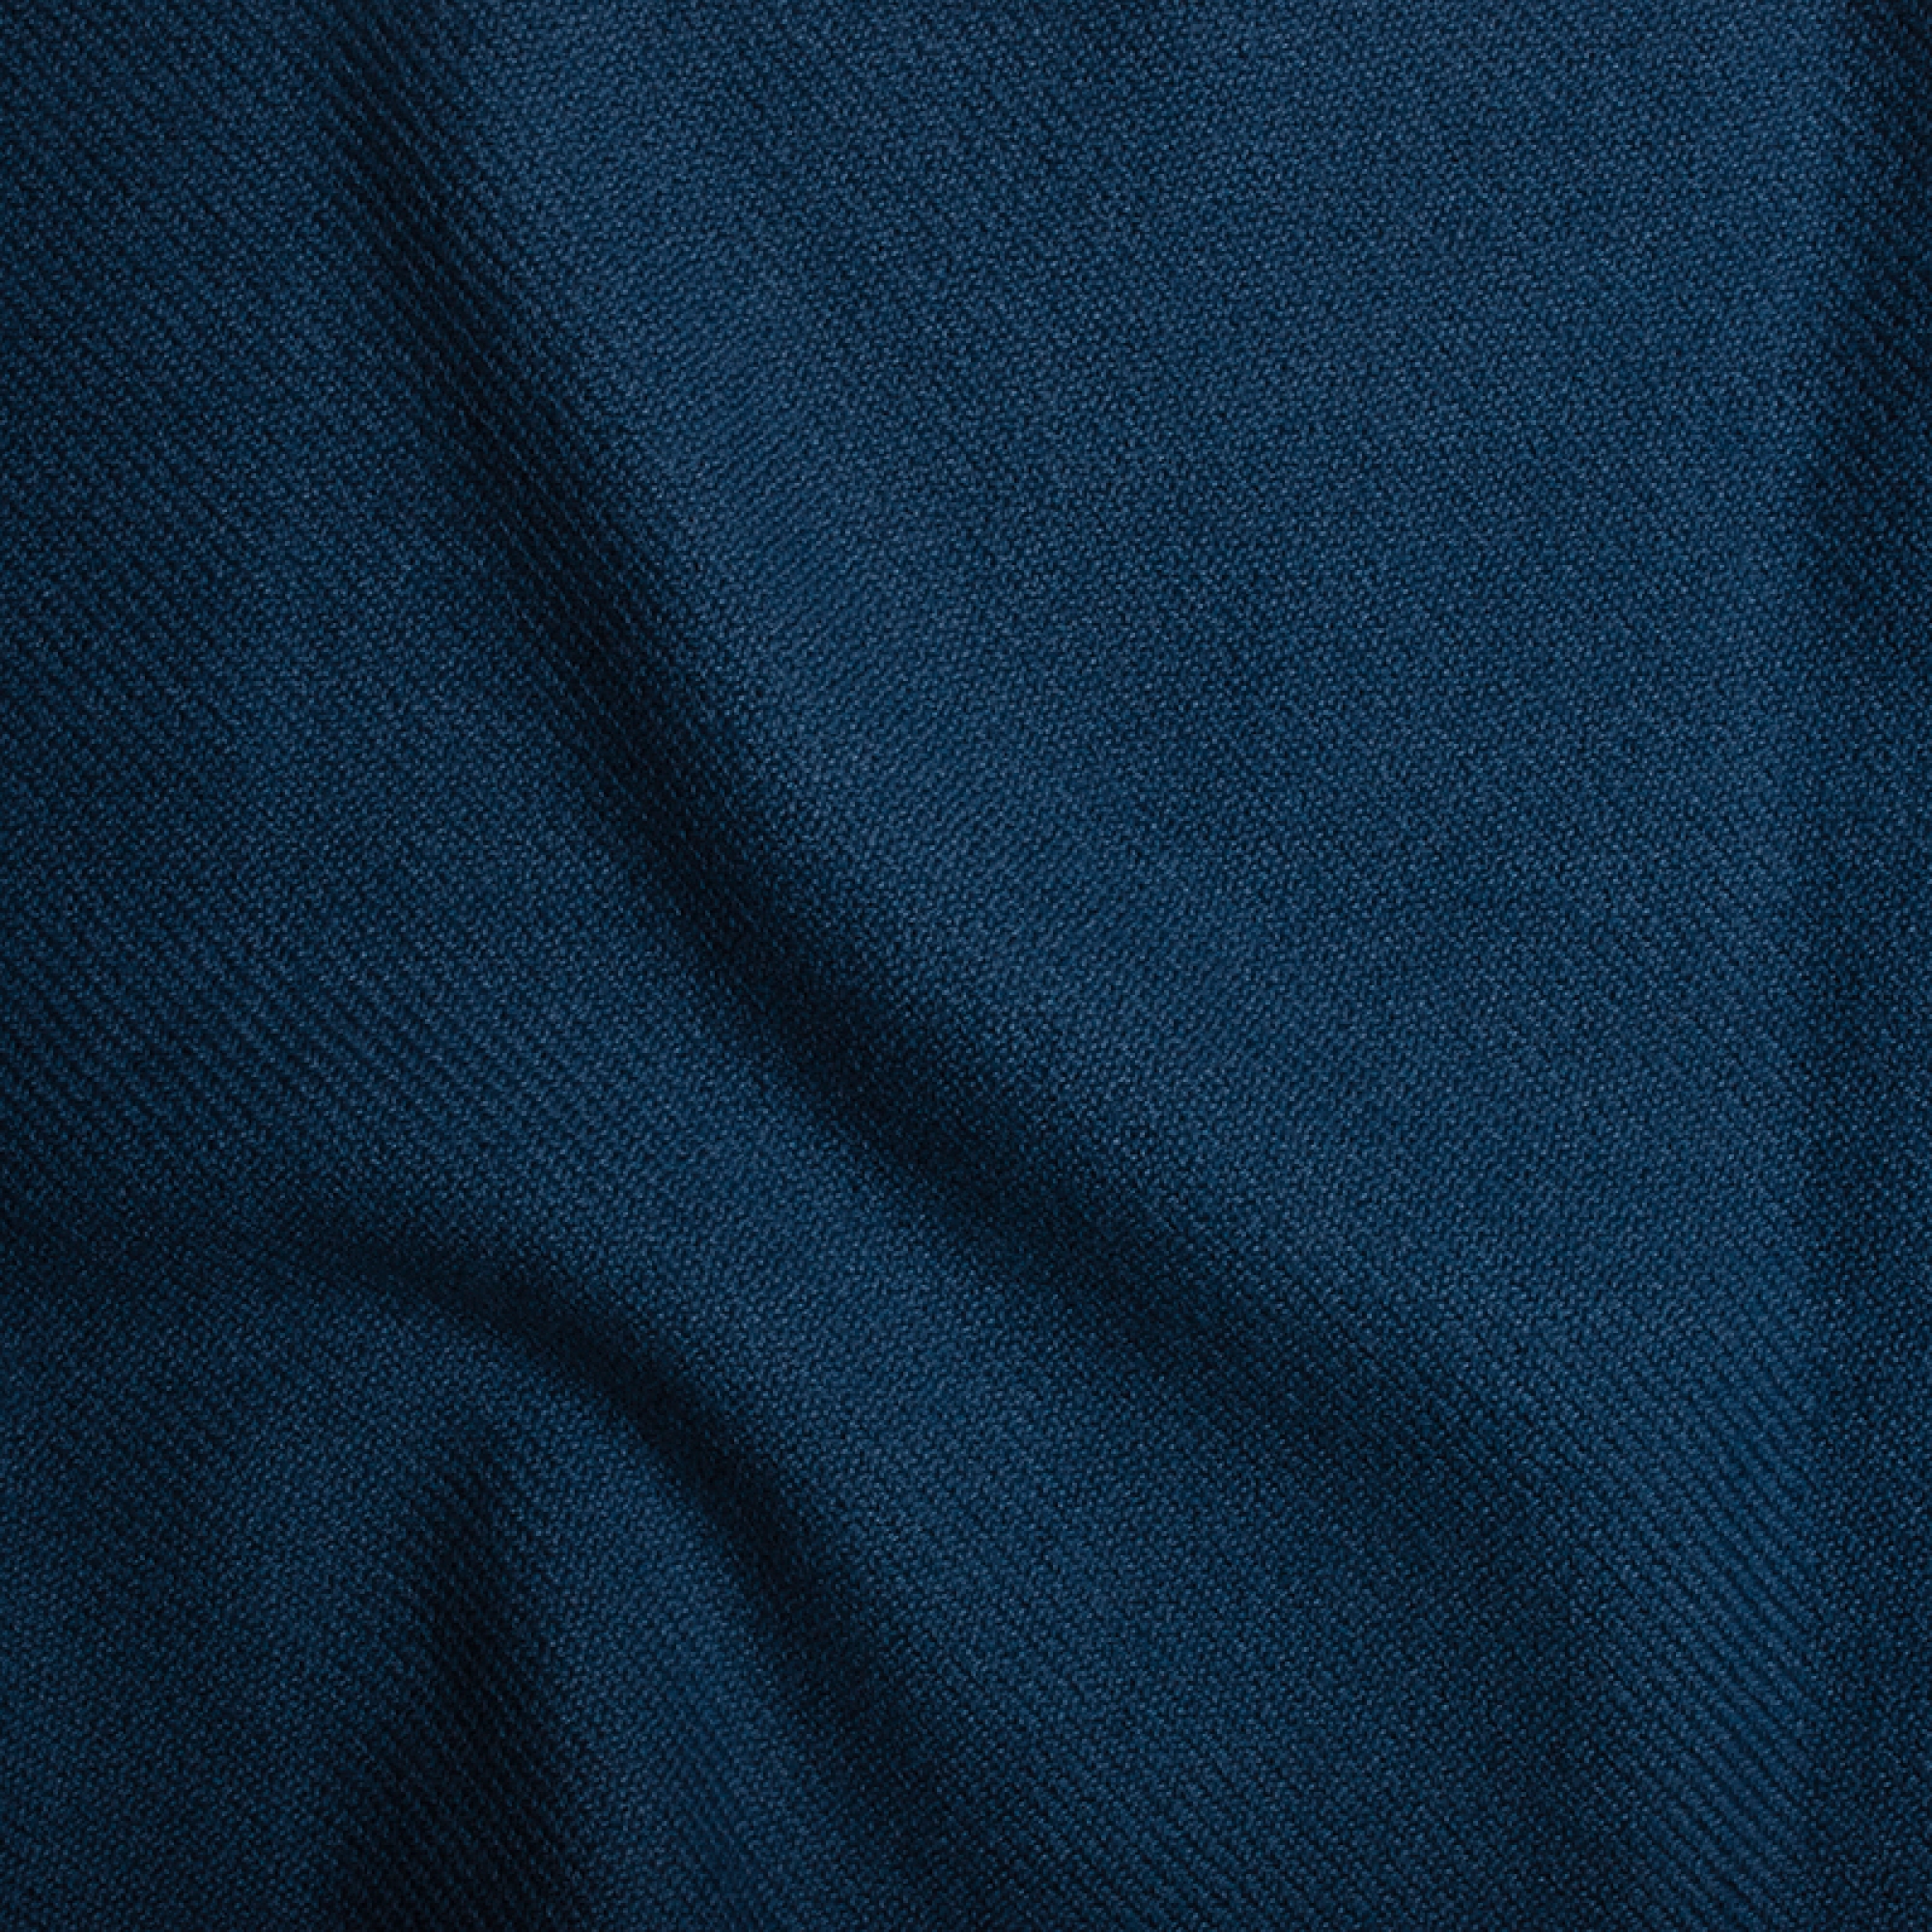 Cachemire accessoires couvertures plaids toodoo plain s 140 x 200 bleu prusse 140 x 200 cm